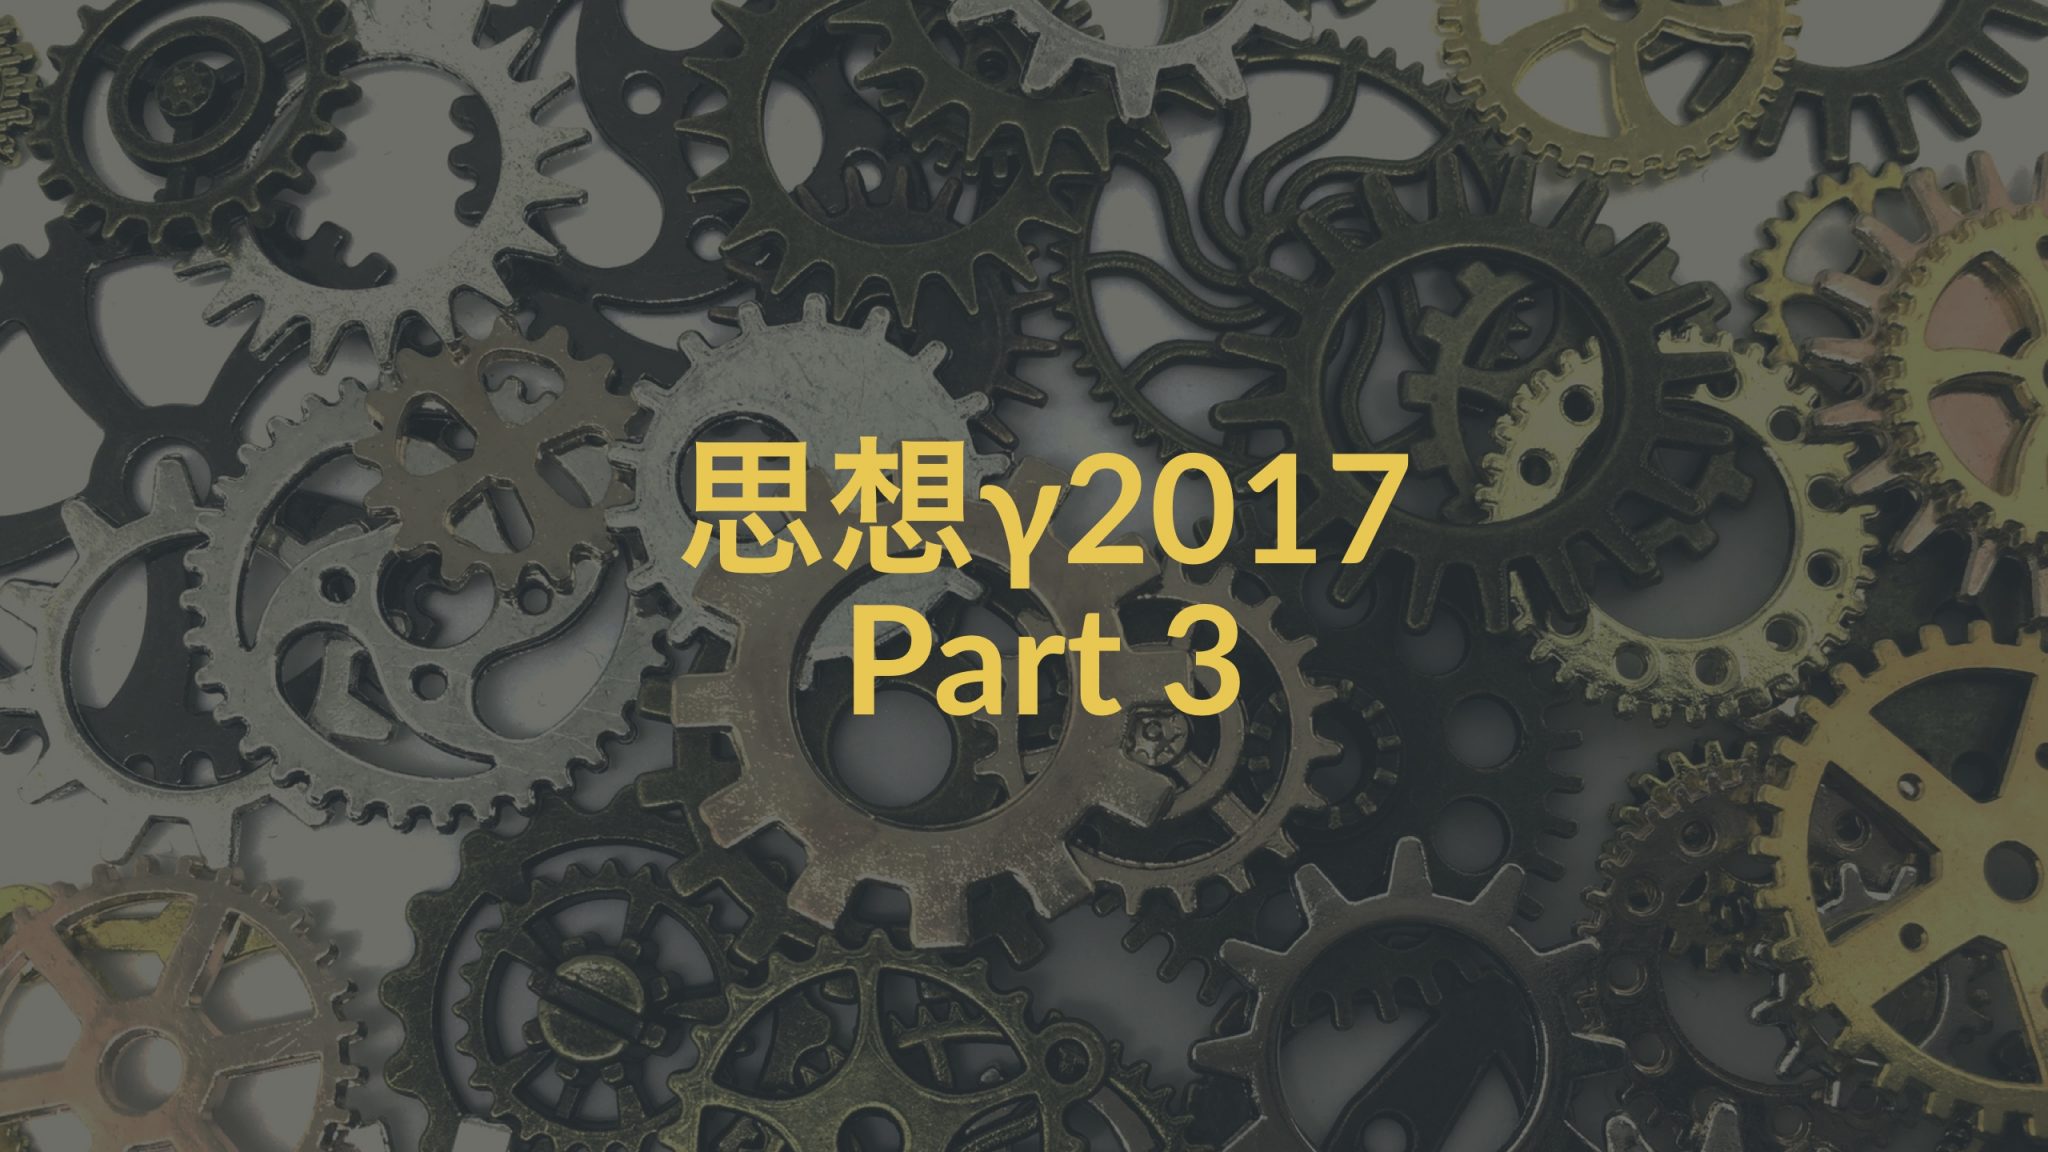 【Part3】思想γ2017―生きる上での現代哲学的問題と原理的規範